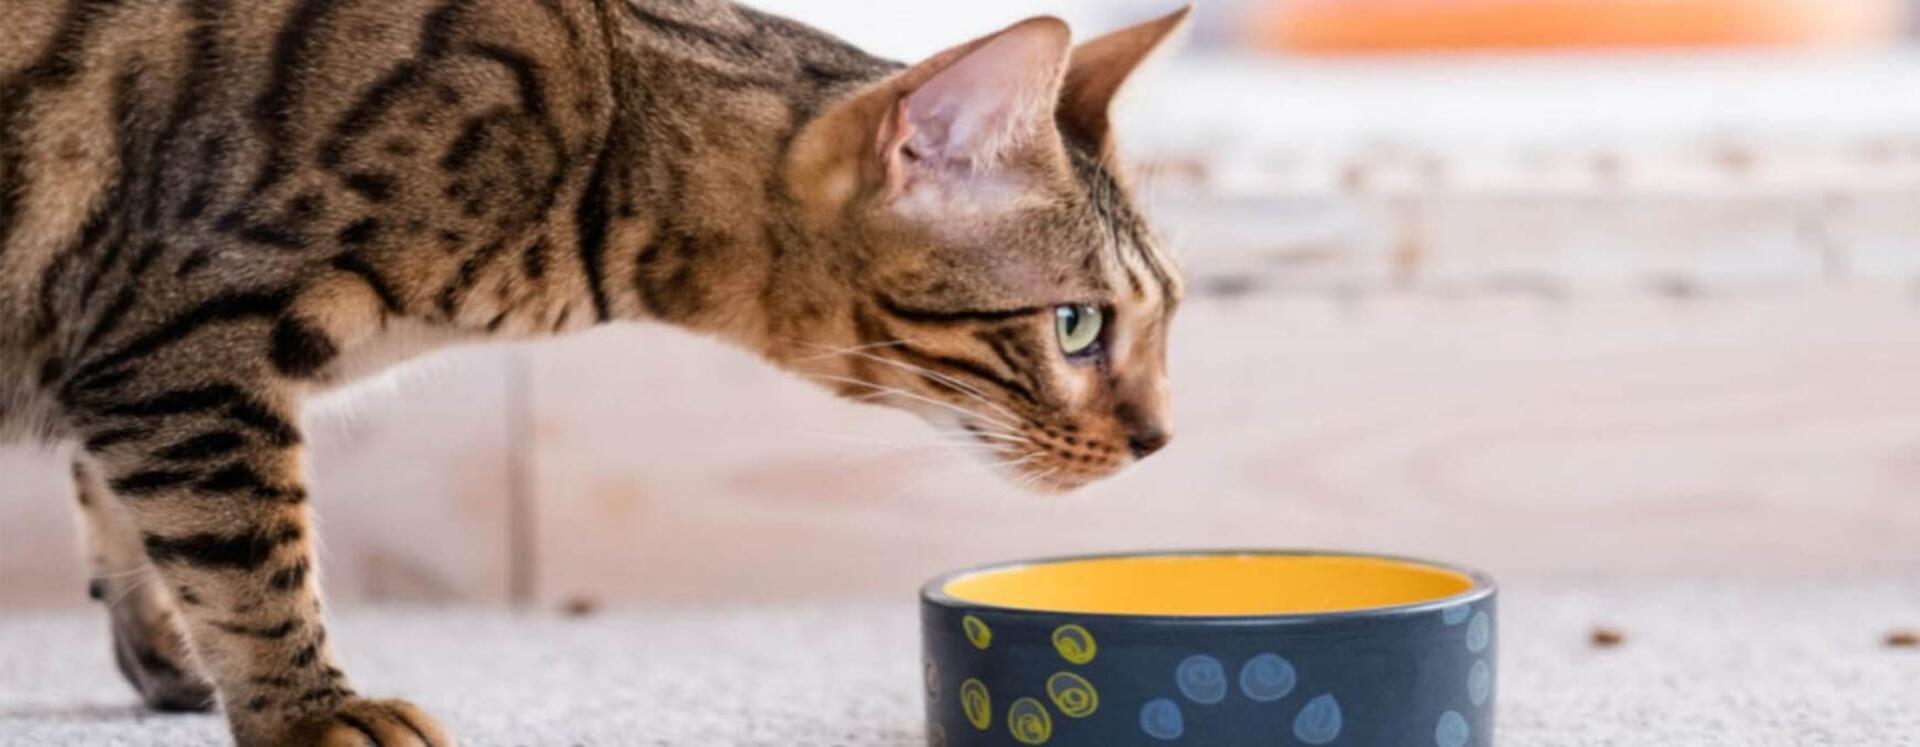 cirmos cica tálból készül vizet inni